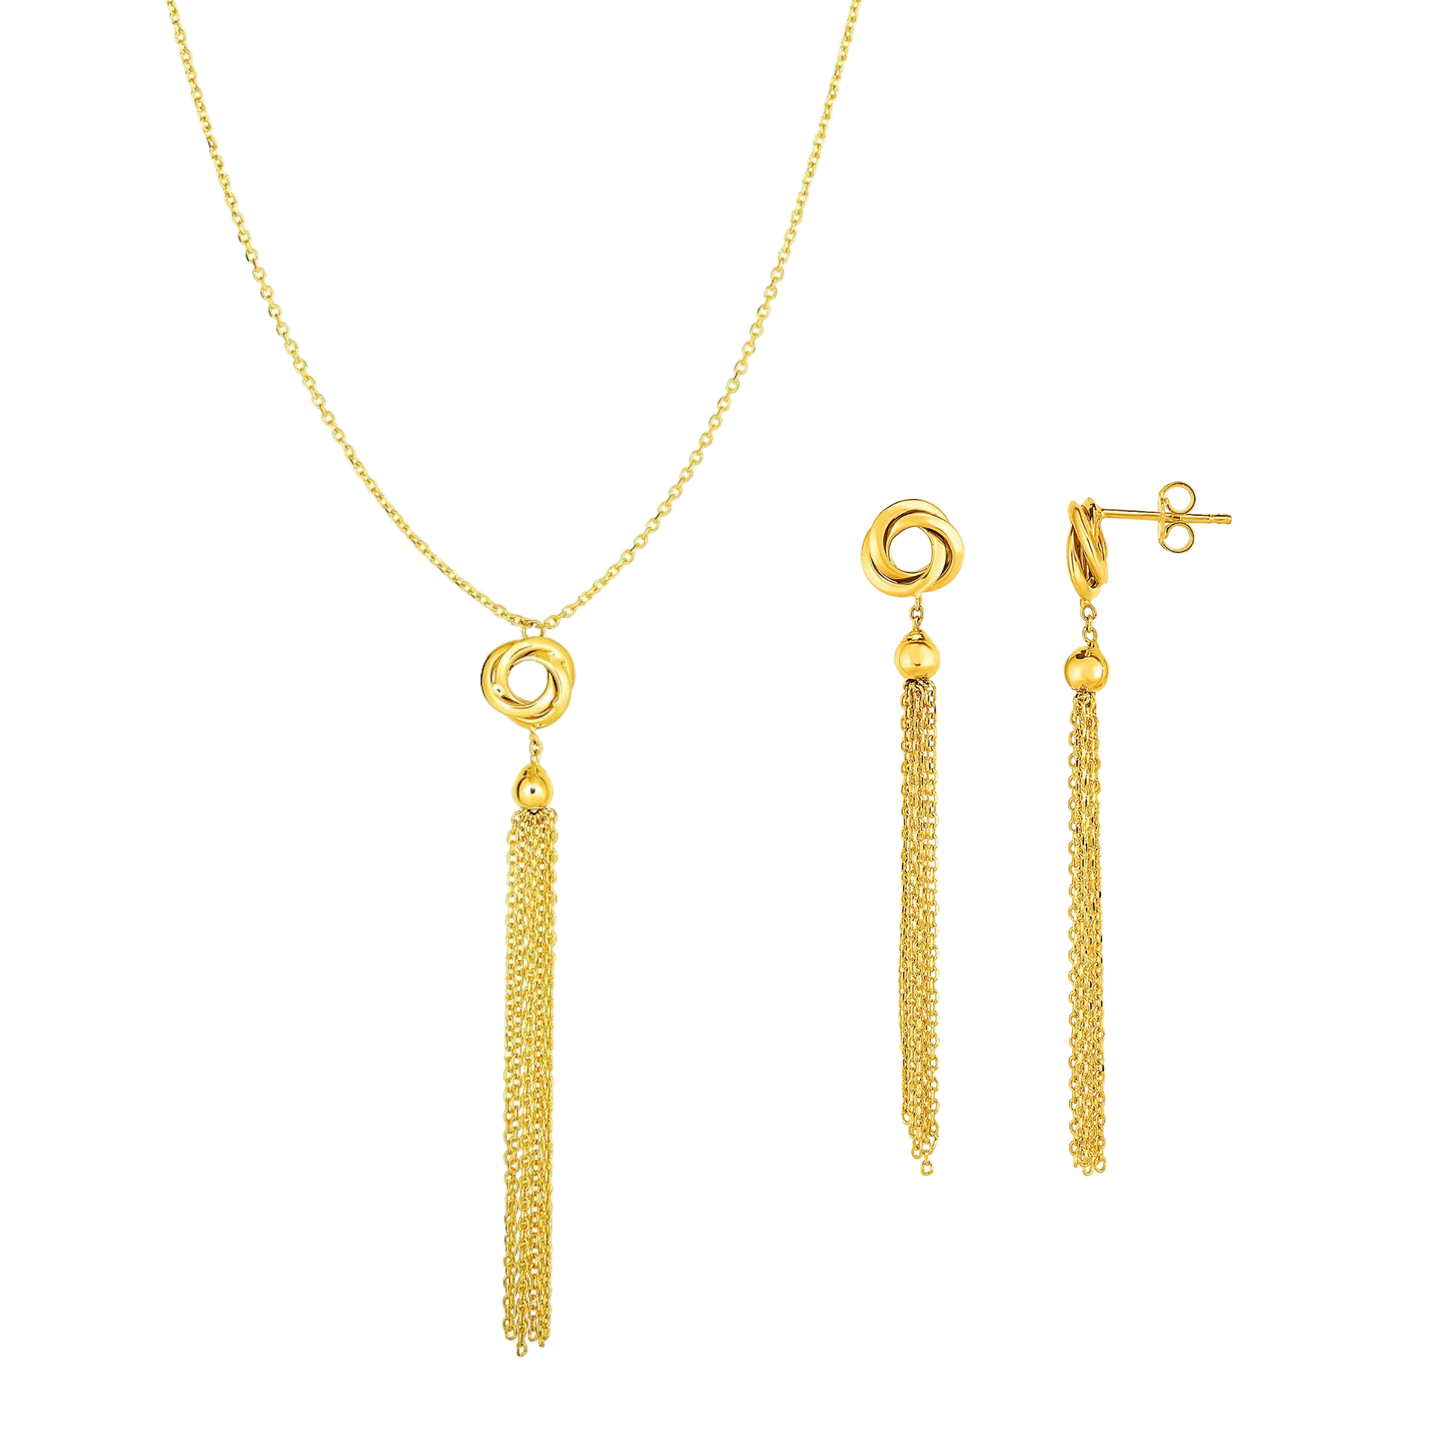 Love Knots Tassel Necklace & Earrings Set